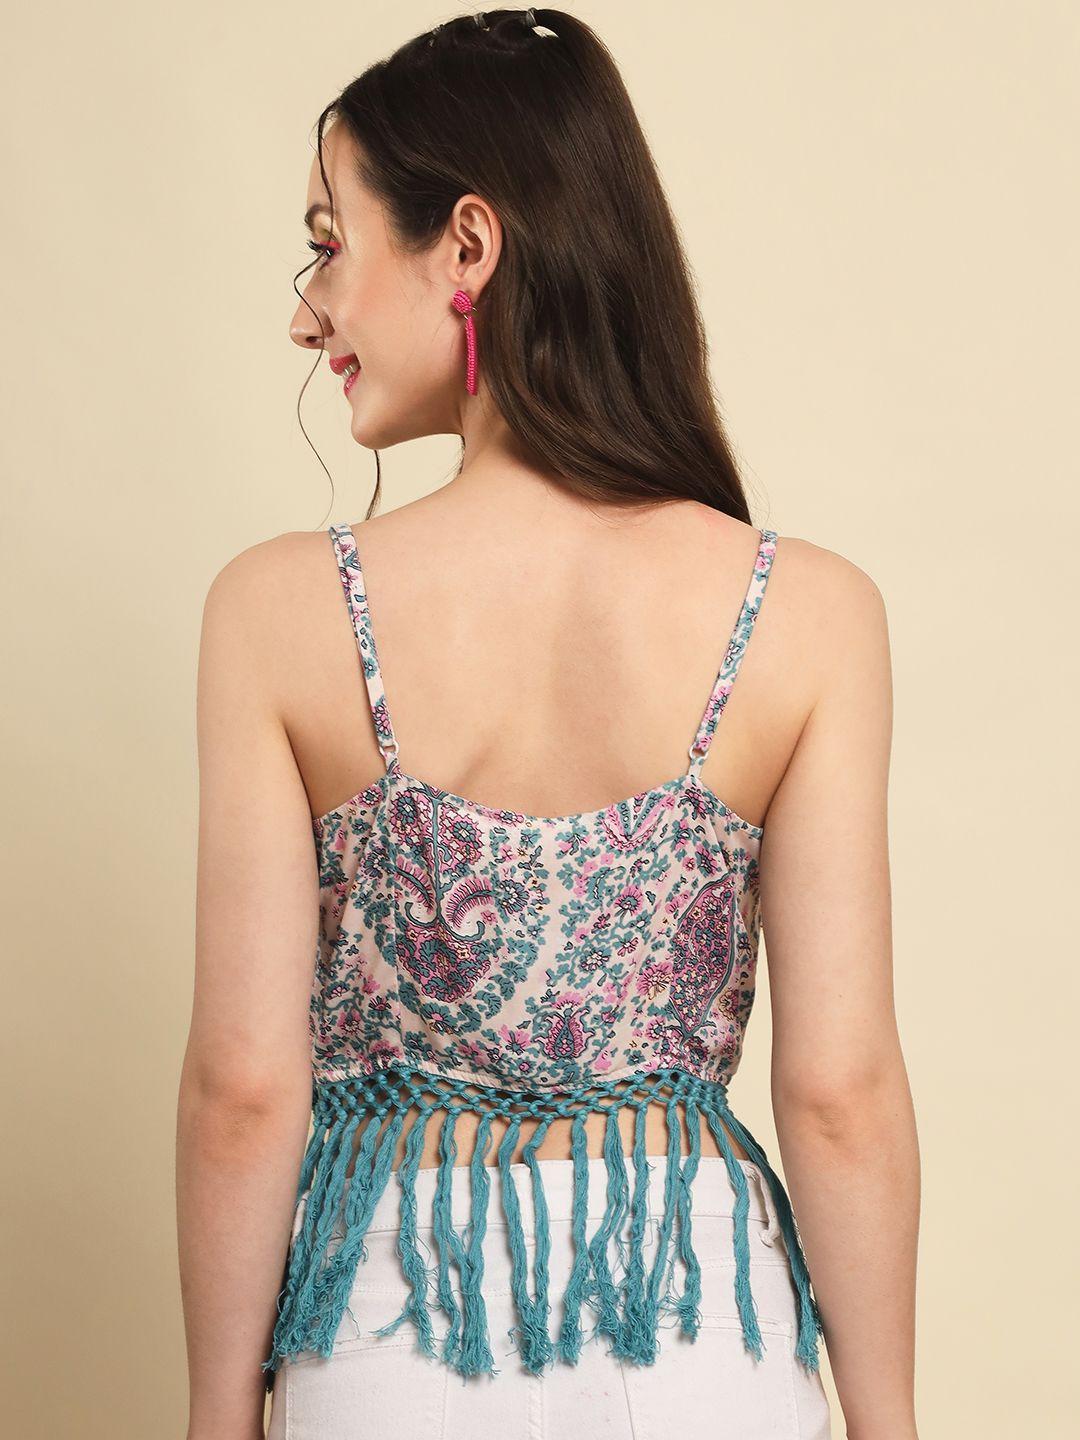 TRENDARREST Women's Rayon Paisley Print Lace Detail Top